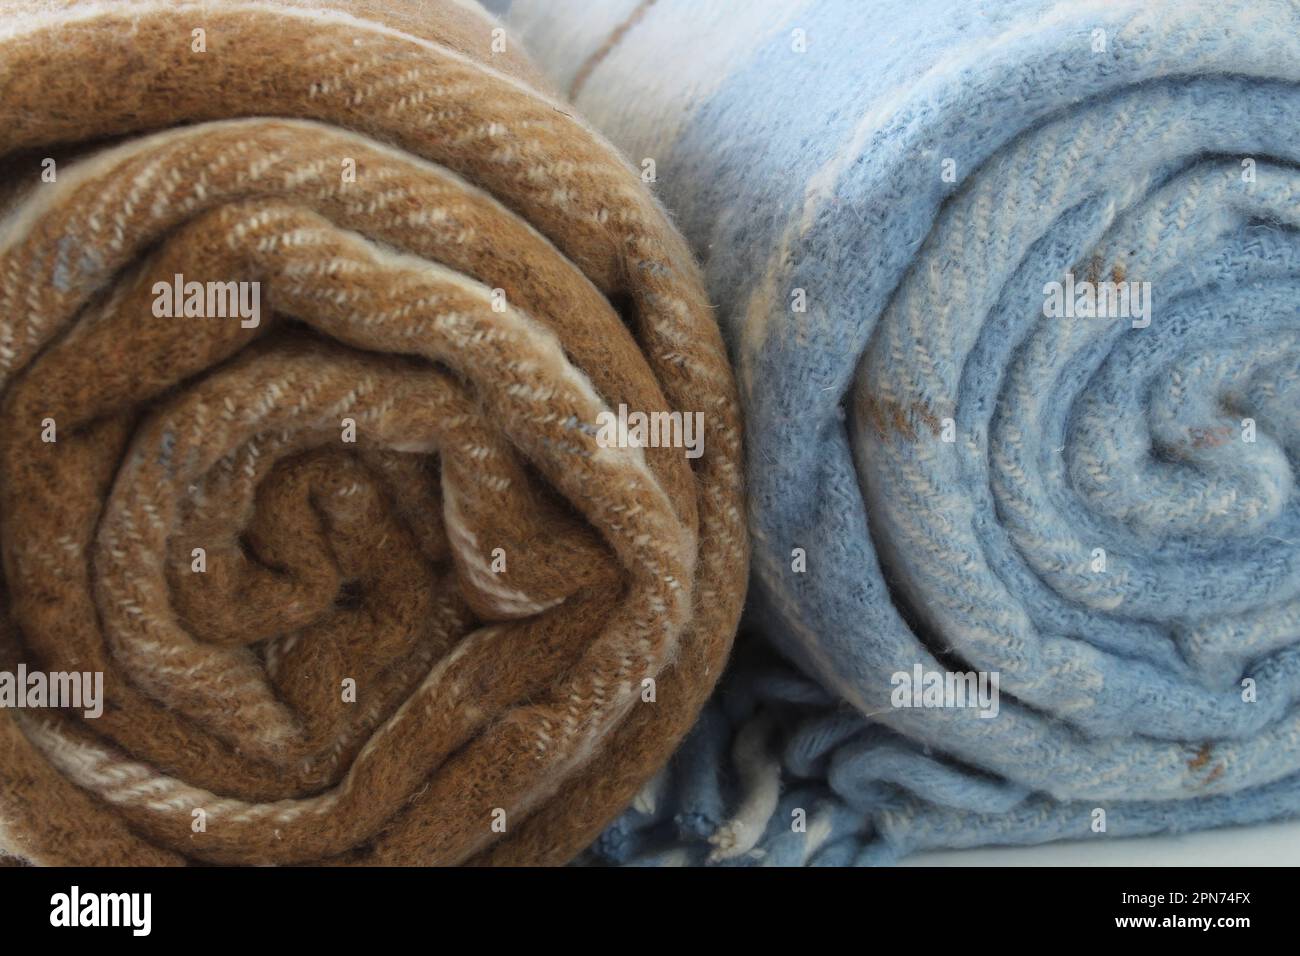 Coperta in lana a quadri isolata su fondo bianco. Coperta arrotolata beige-marrone e bianco-blu. Primo piano. Foto Stock